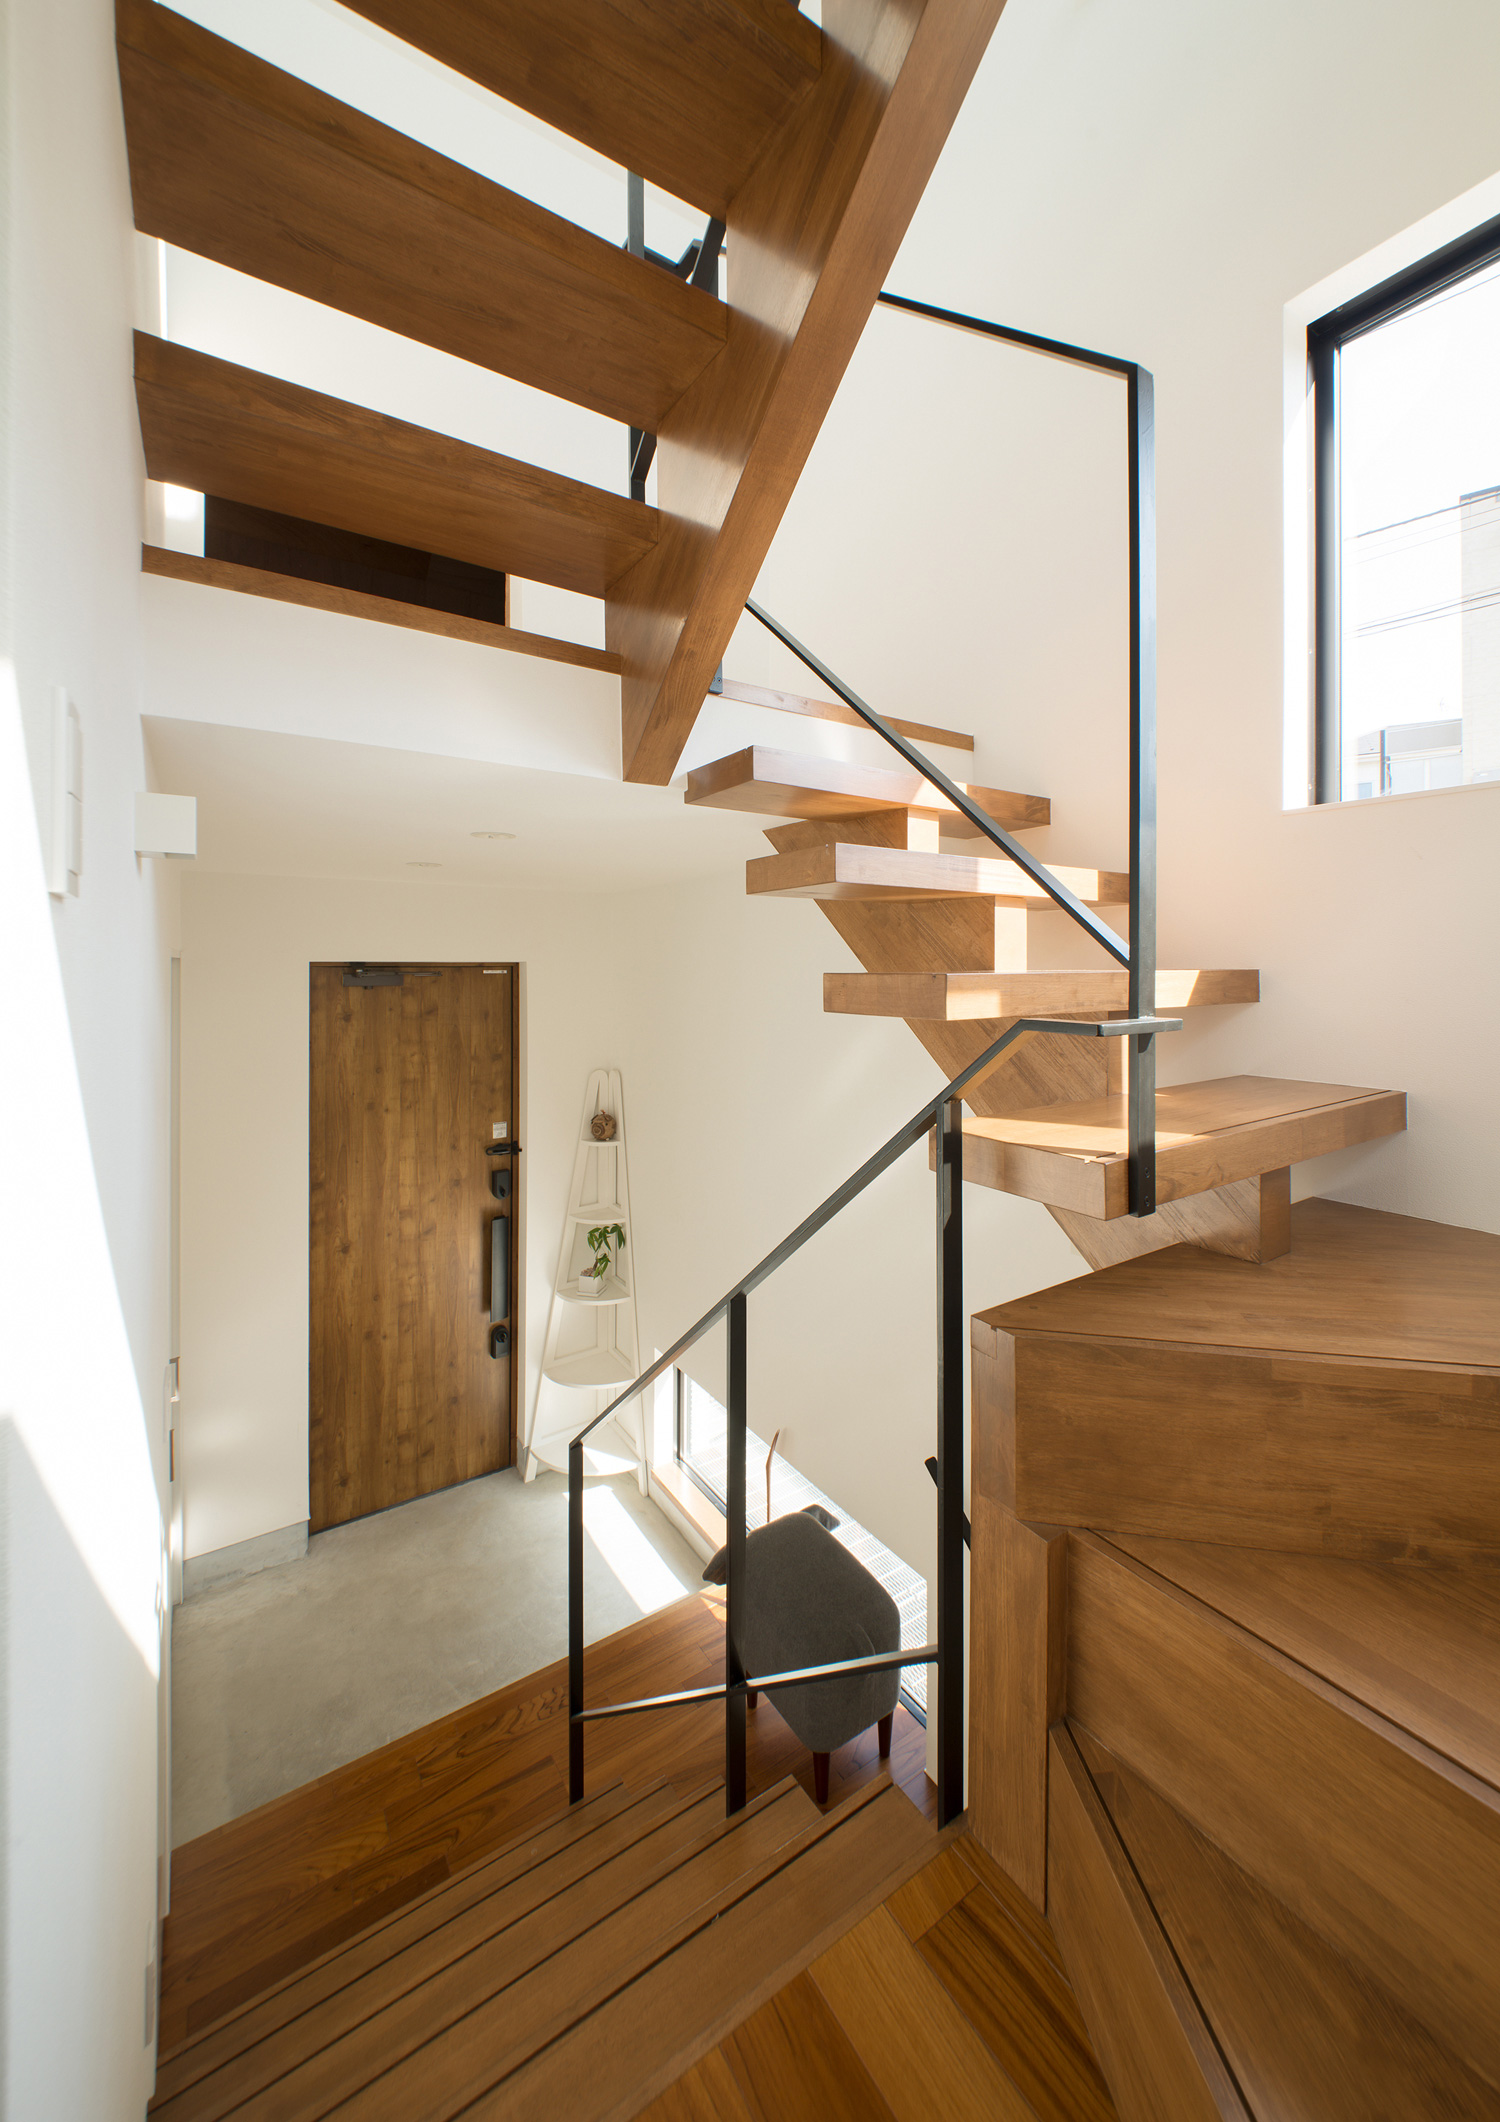 木のスケルトン階段が螺旋階段状になった室内・デザイン住宅